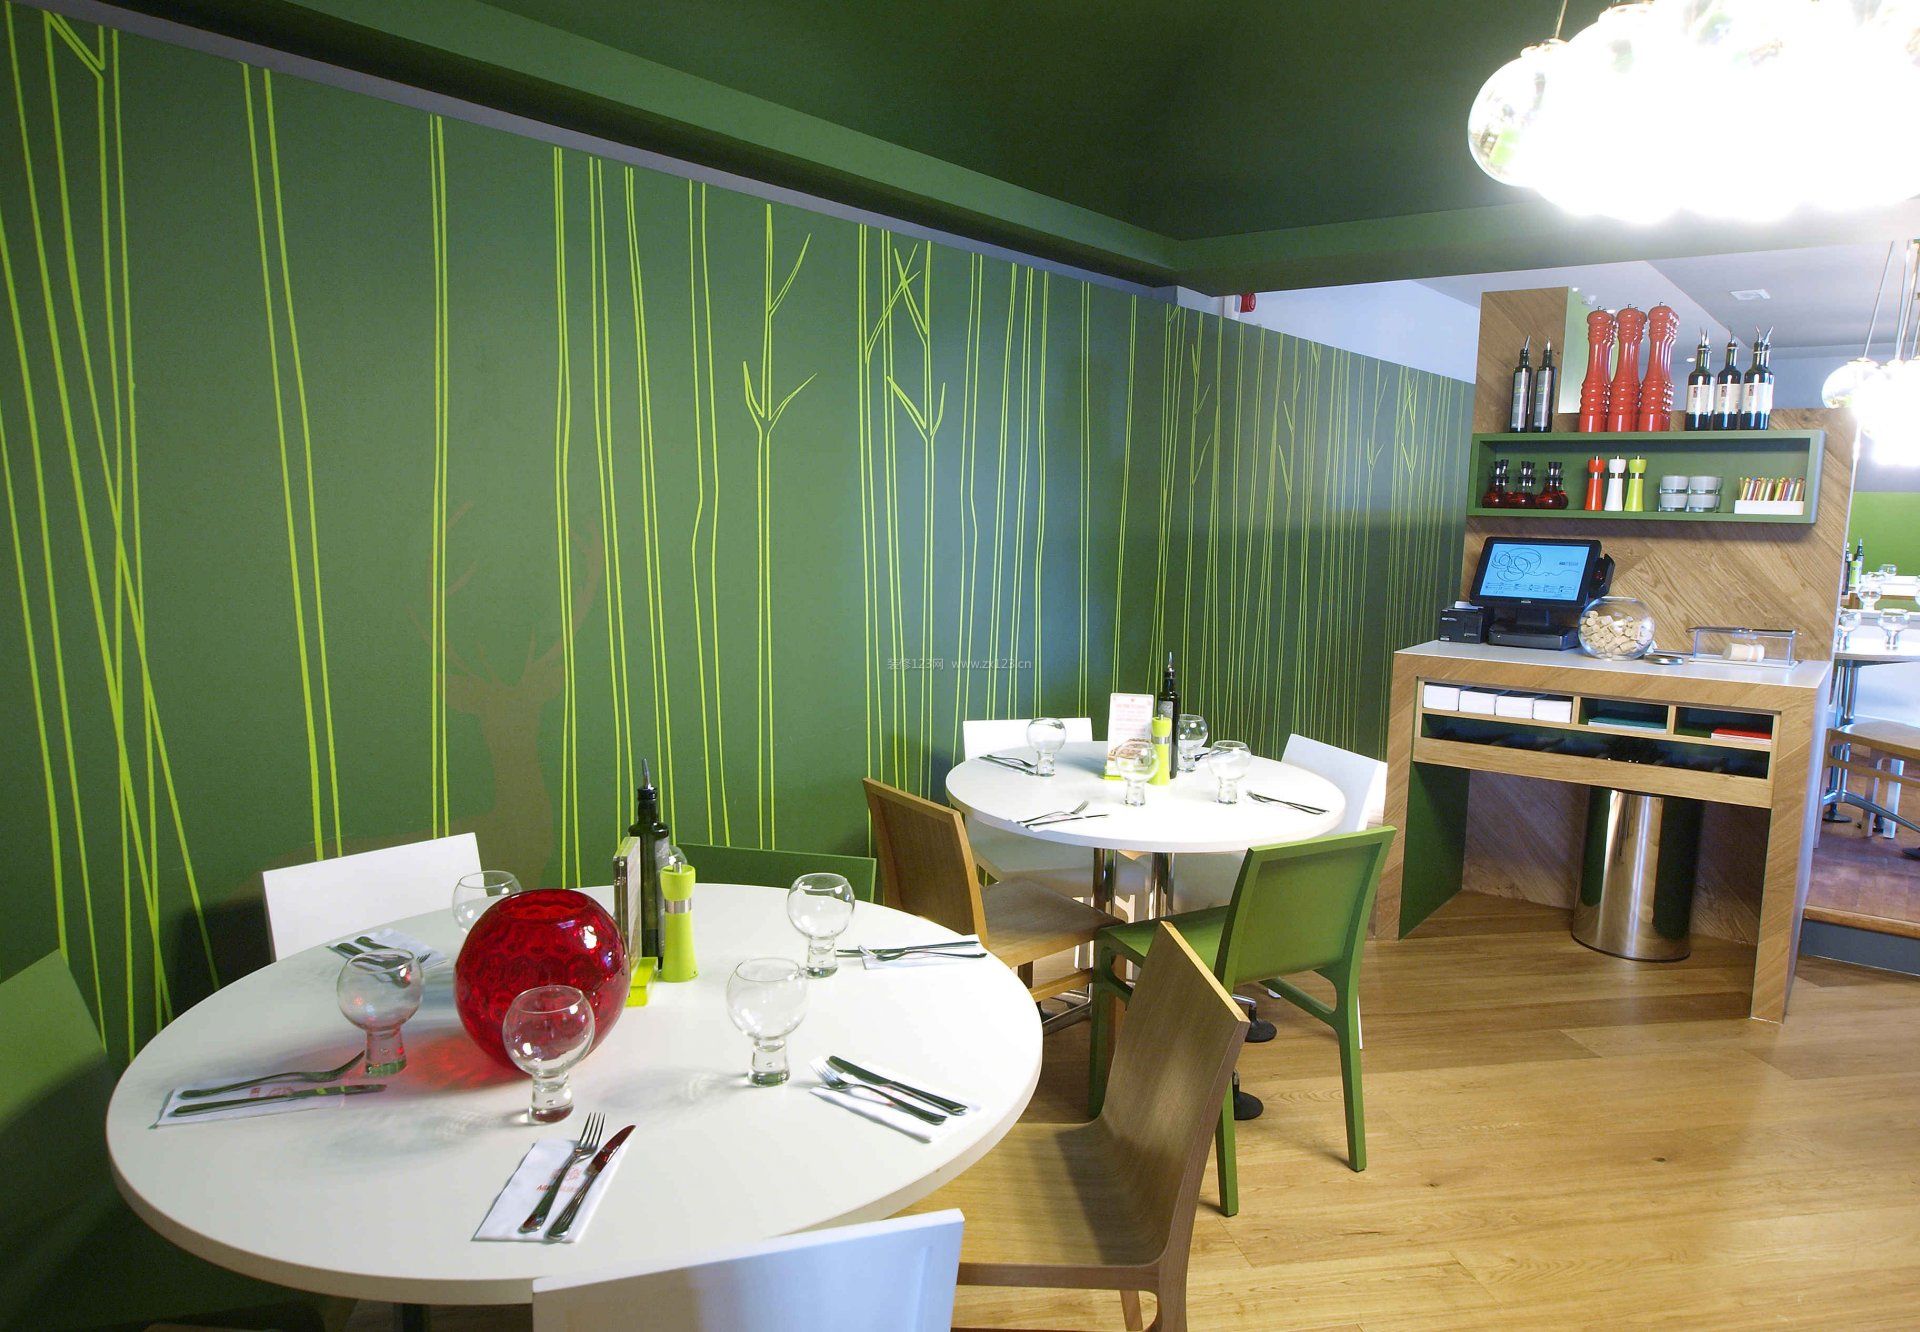 餐馆门面室内绿色墙面装修效果图片